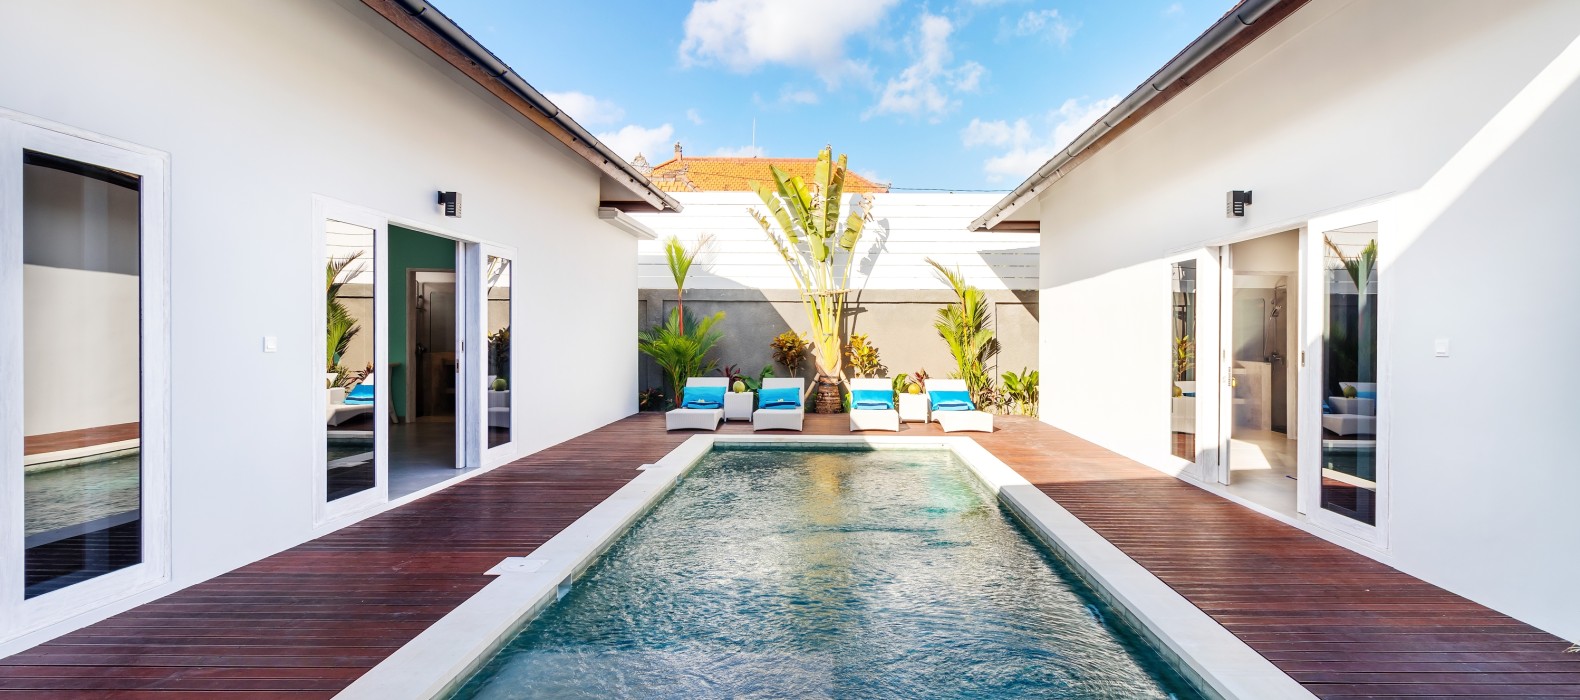 Exterior pool view of Villa Hiburan in Bali